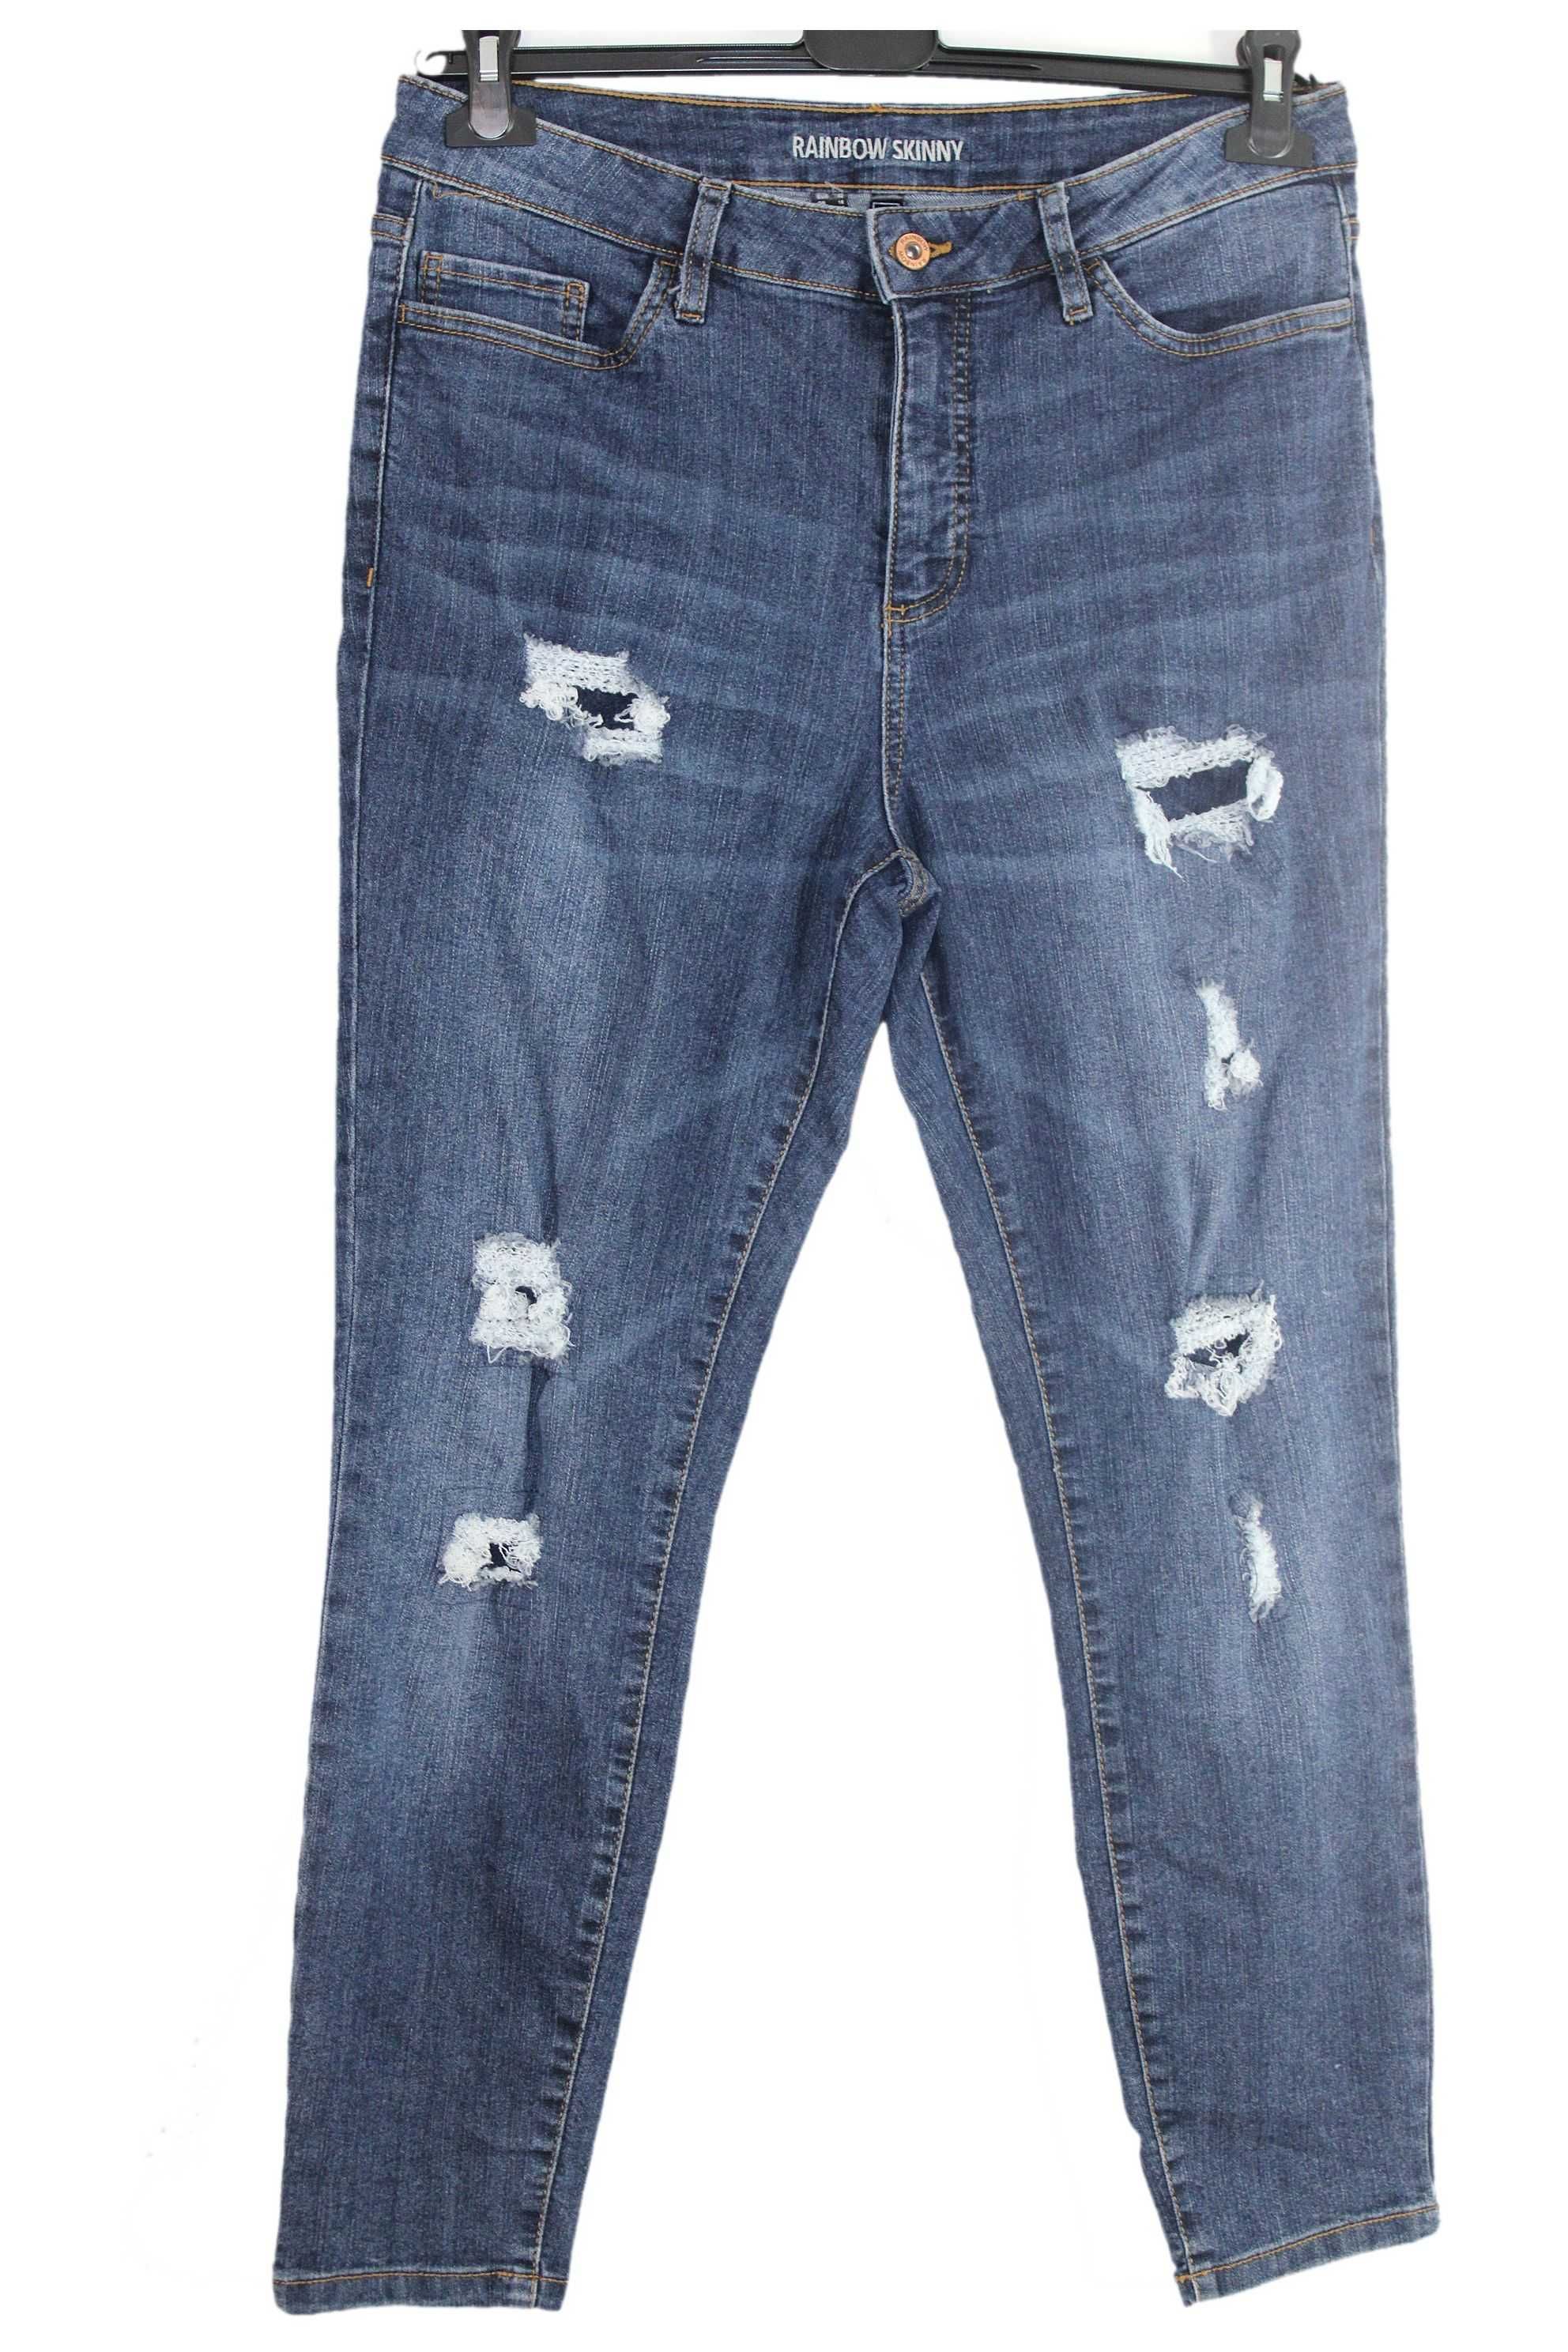 w7 RAINBOW Damskie Spodnie Jeans Skinny Dziury 42 XL